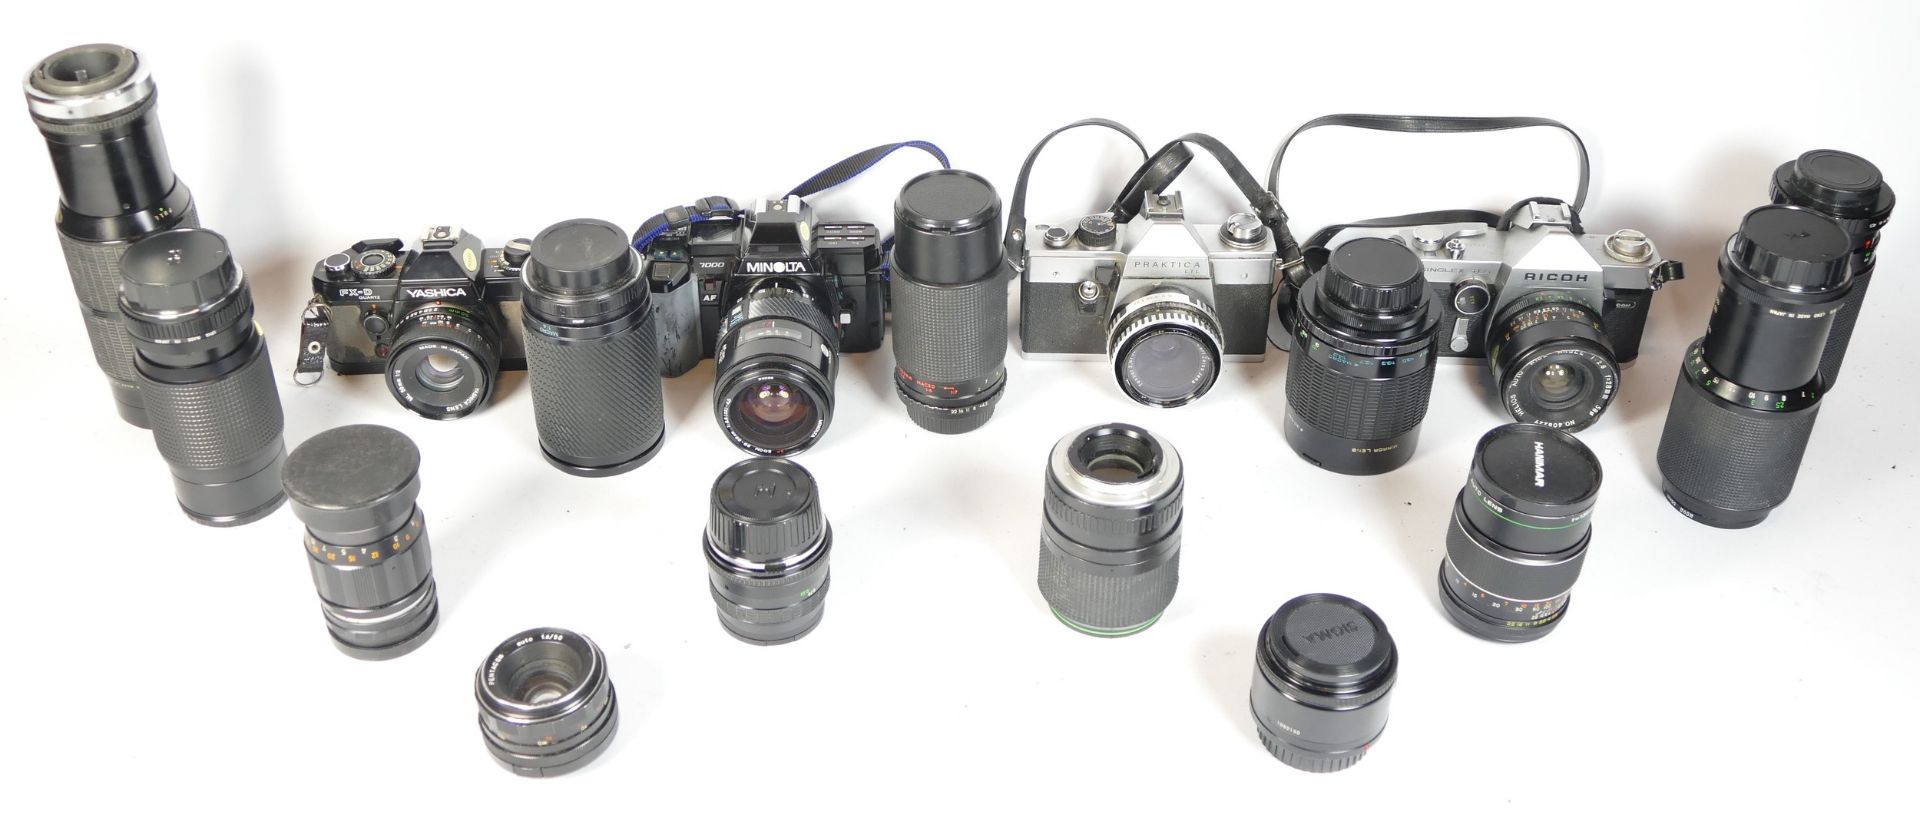 Four SLR vintage film cameras to include a Minolta 7000, a Praktica LTL, a Praktica TLS and and